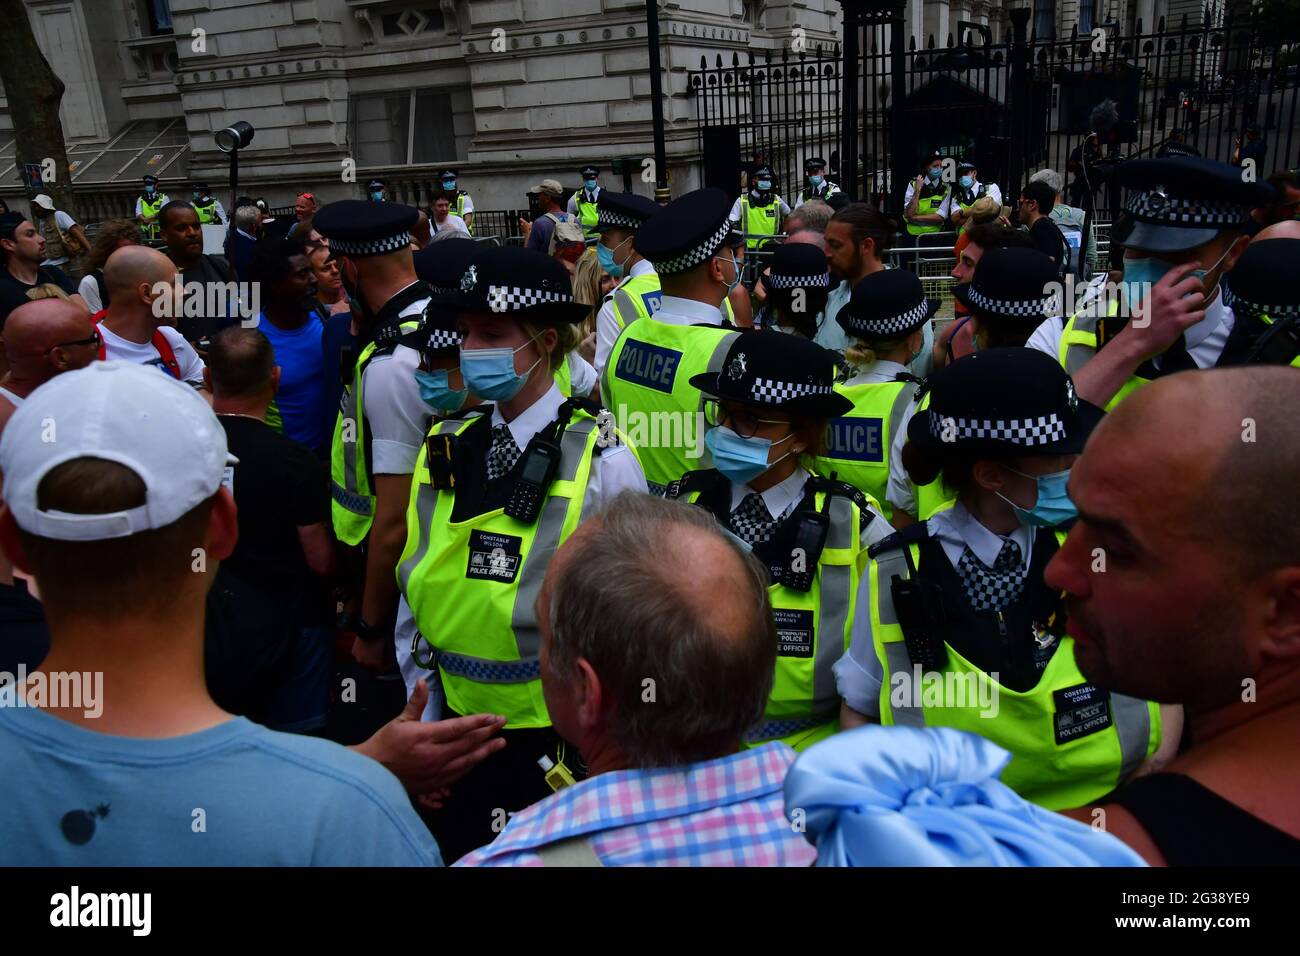 Londres, Reino Unido. 14th de junio de 2021. Manifestantes de boca alta jurando a la policía en el frente de 10 Downing Street el 14th de junio de 2021, Londres, Reino Unido. Crédito: Picture Capital/Alamy Live News Foto de stock